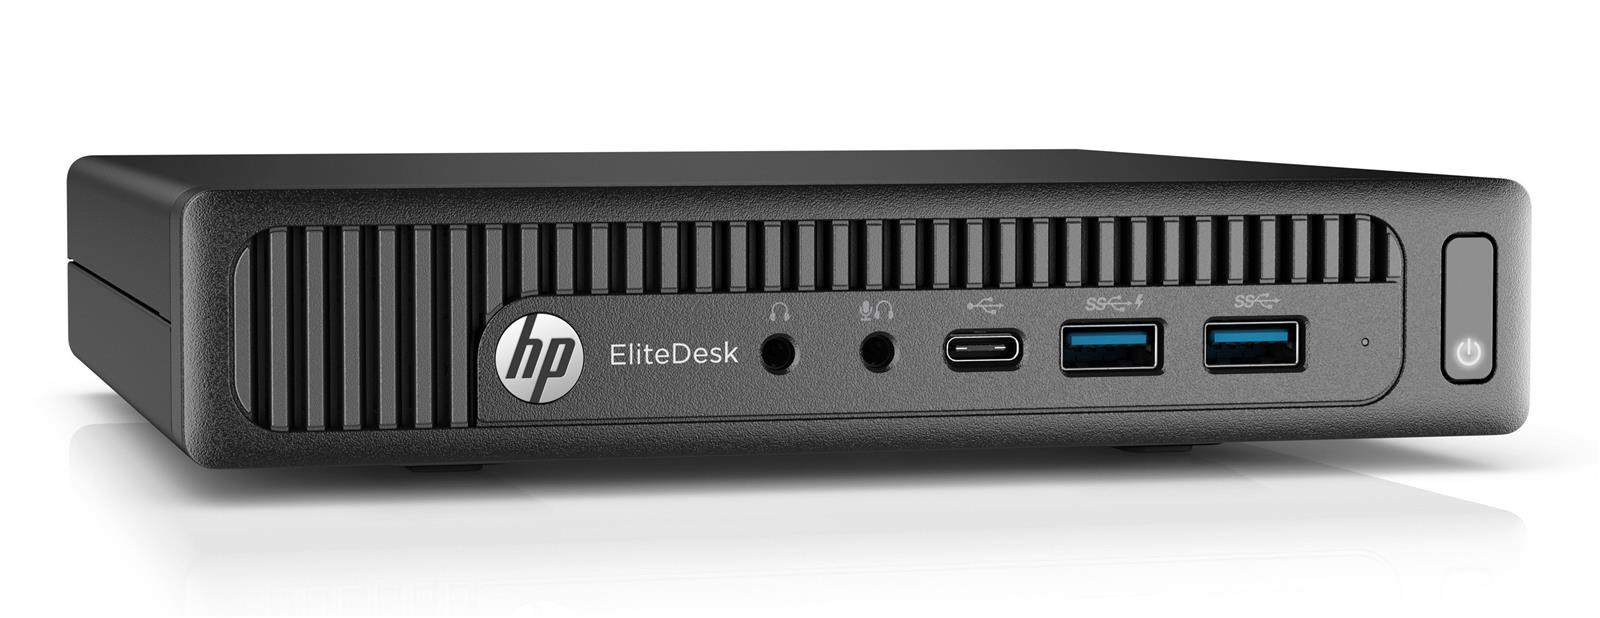 HP EliteDesk 800 G2 USFF Tiny Core i5-6500T 2,50GHz 4GB RAM 128GB SSD Win 10 Pro Mini-PC